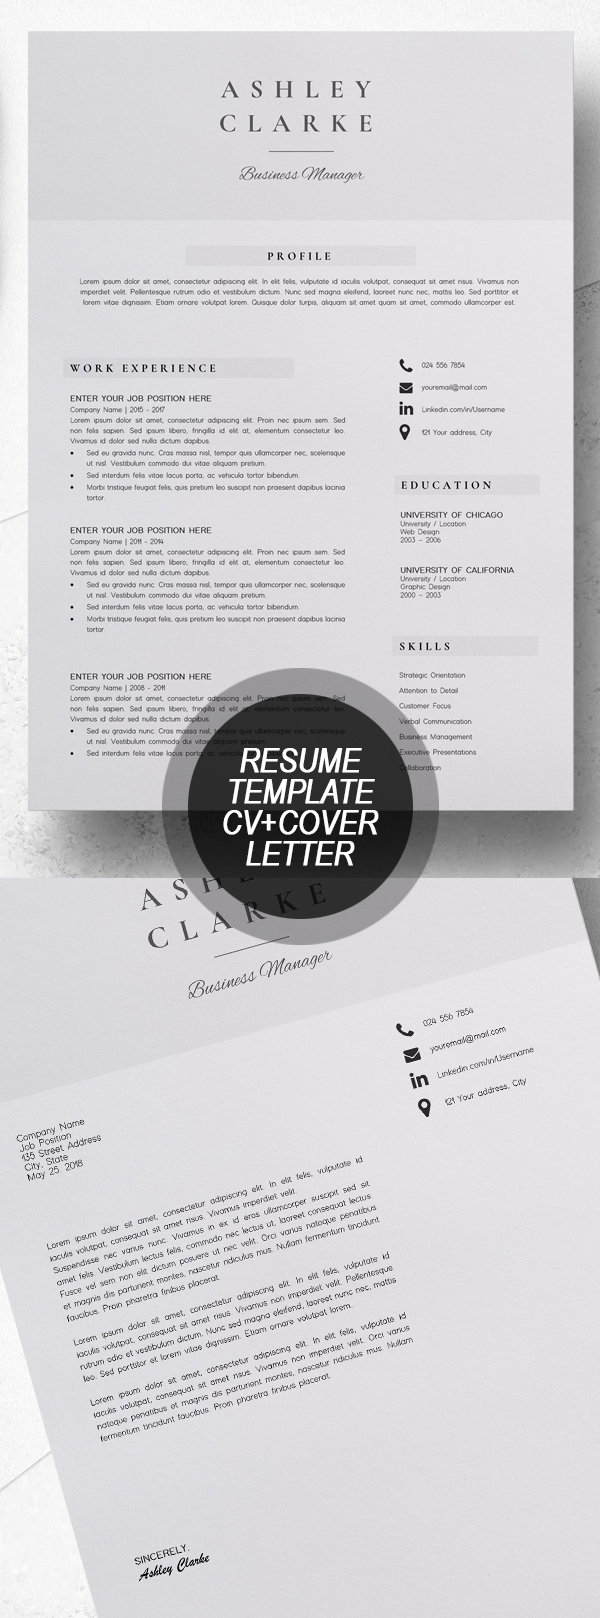 Resume Template  CV + Cover Letter #resumedesign